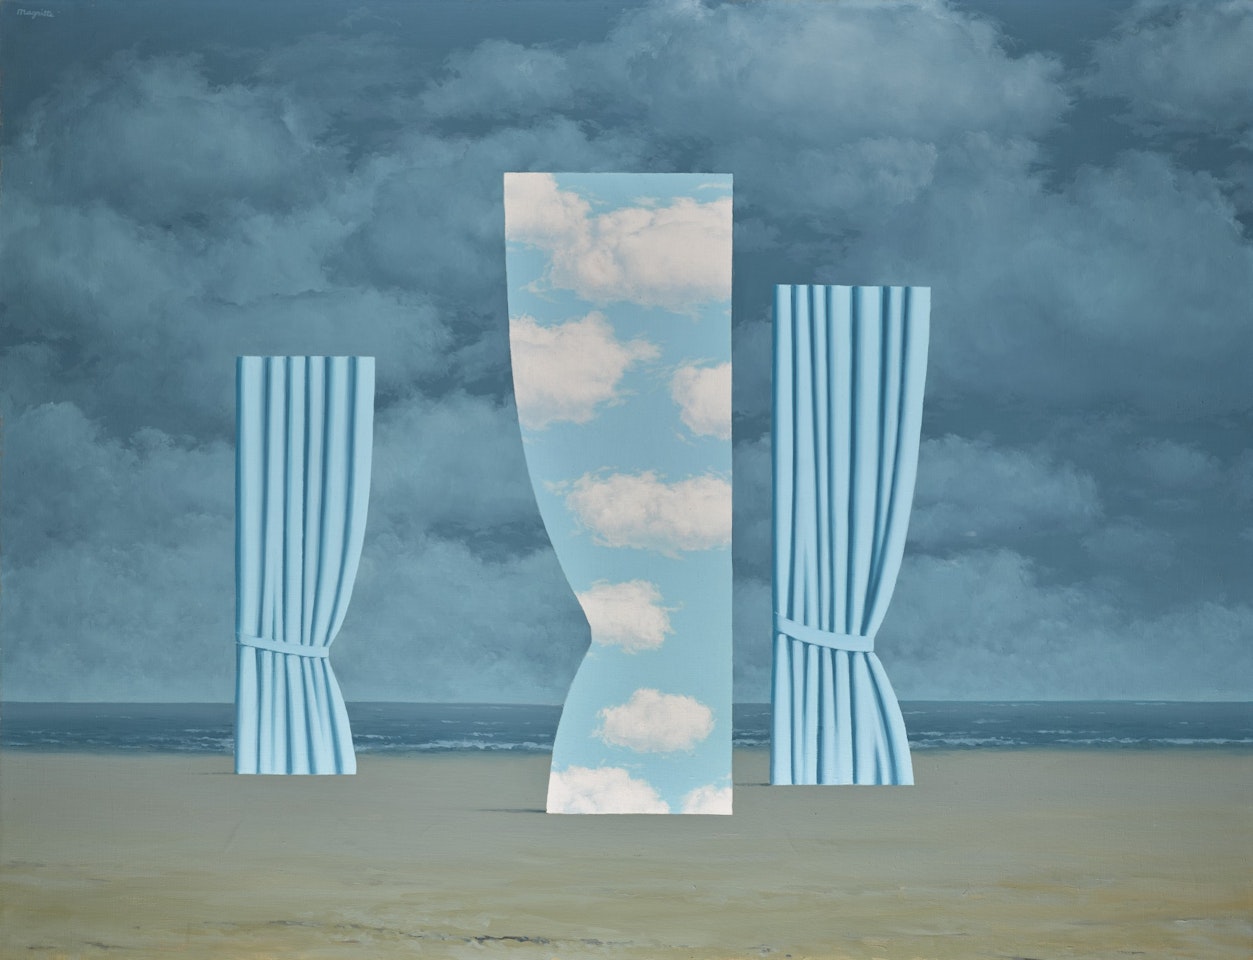 L'OVATION by René Magritte